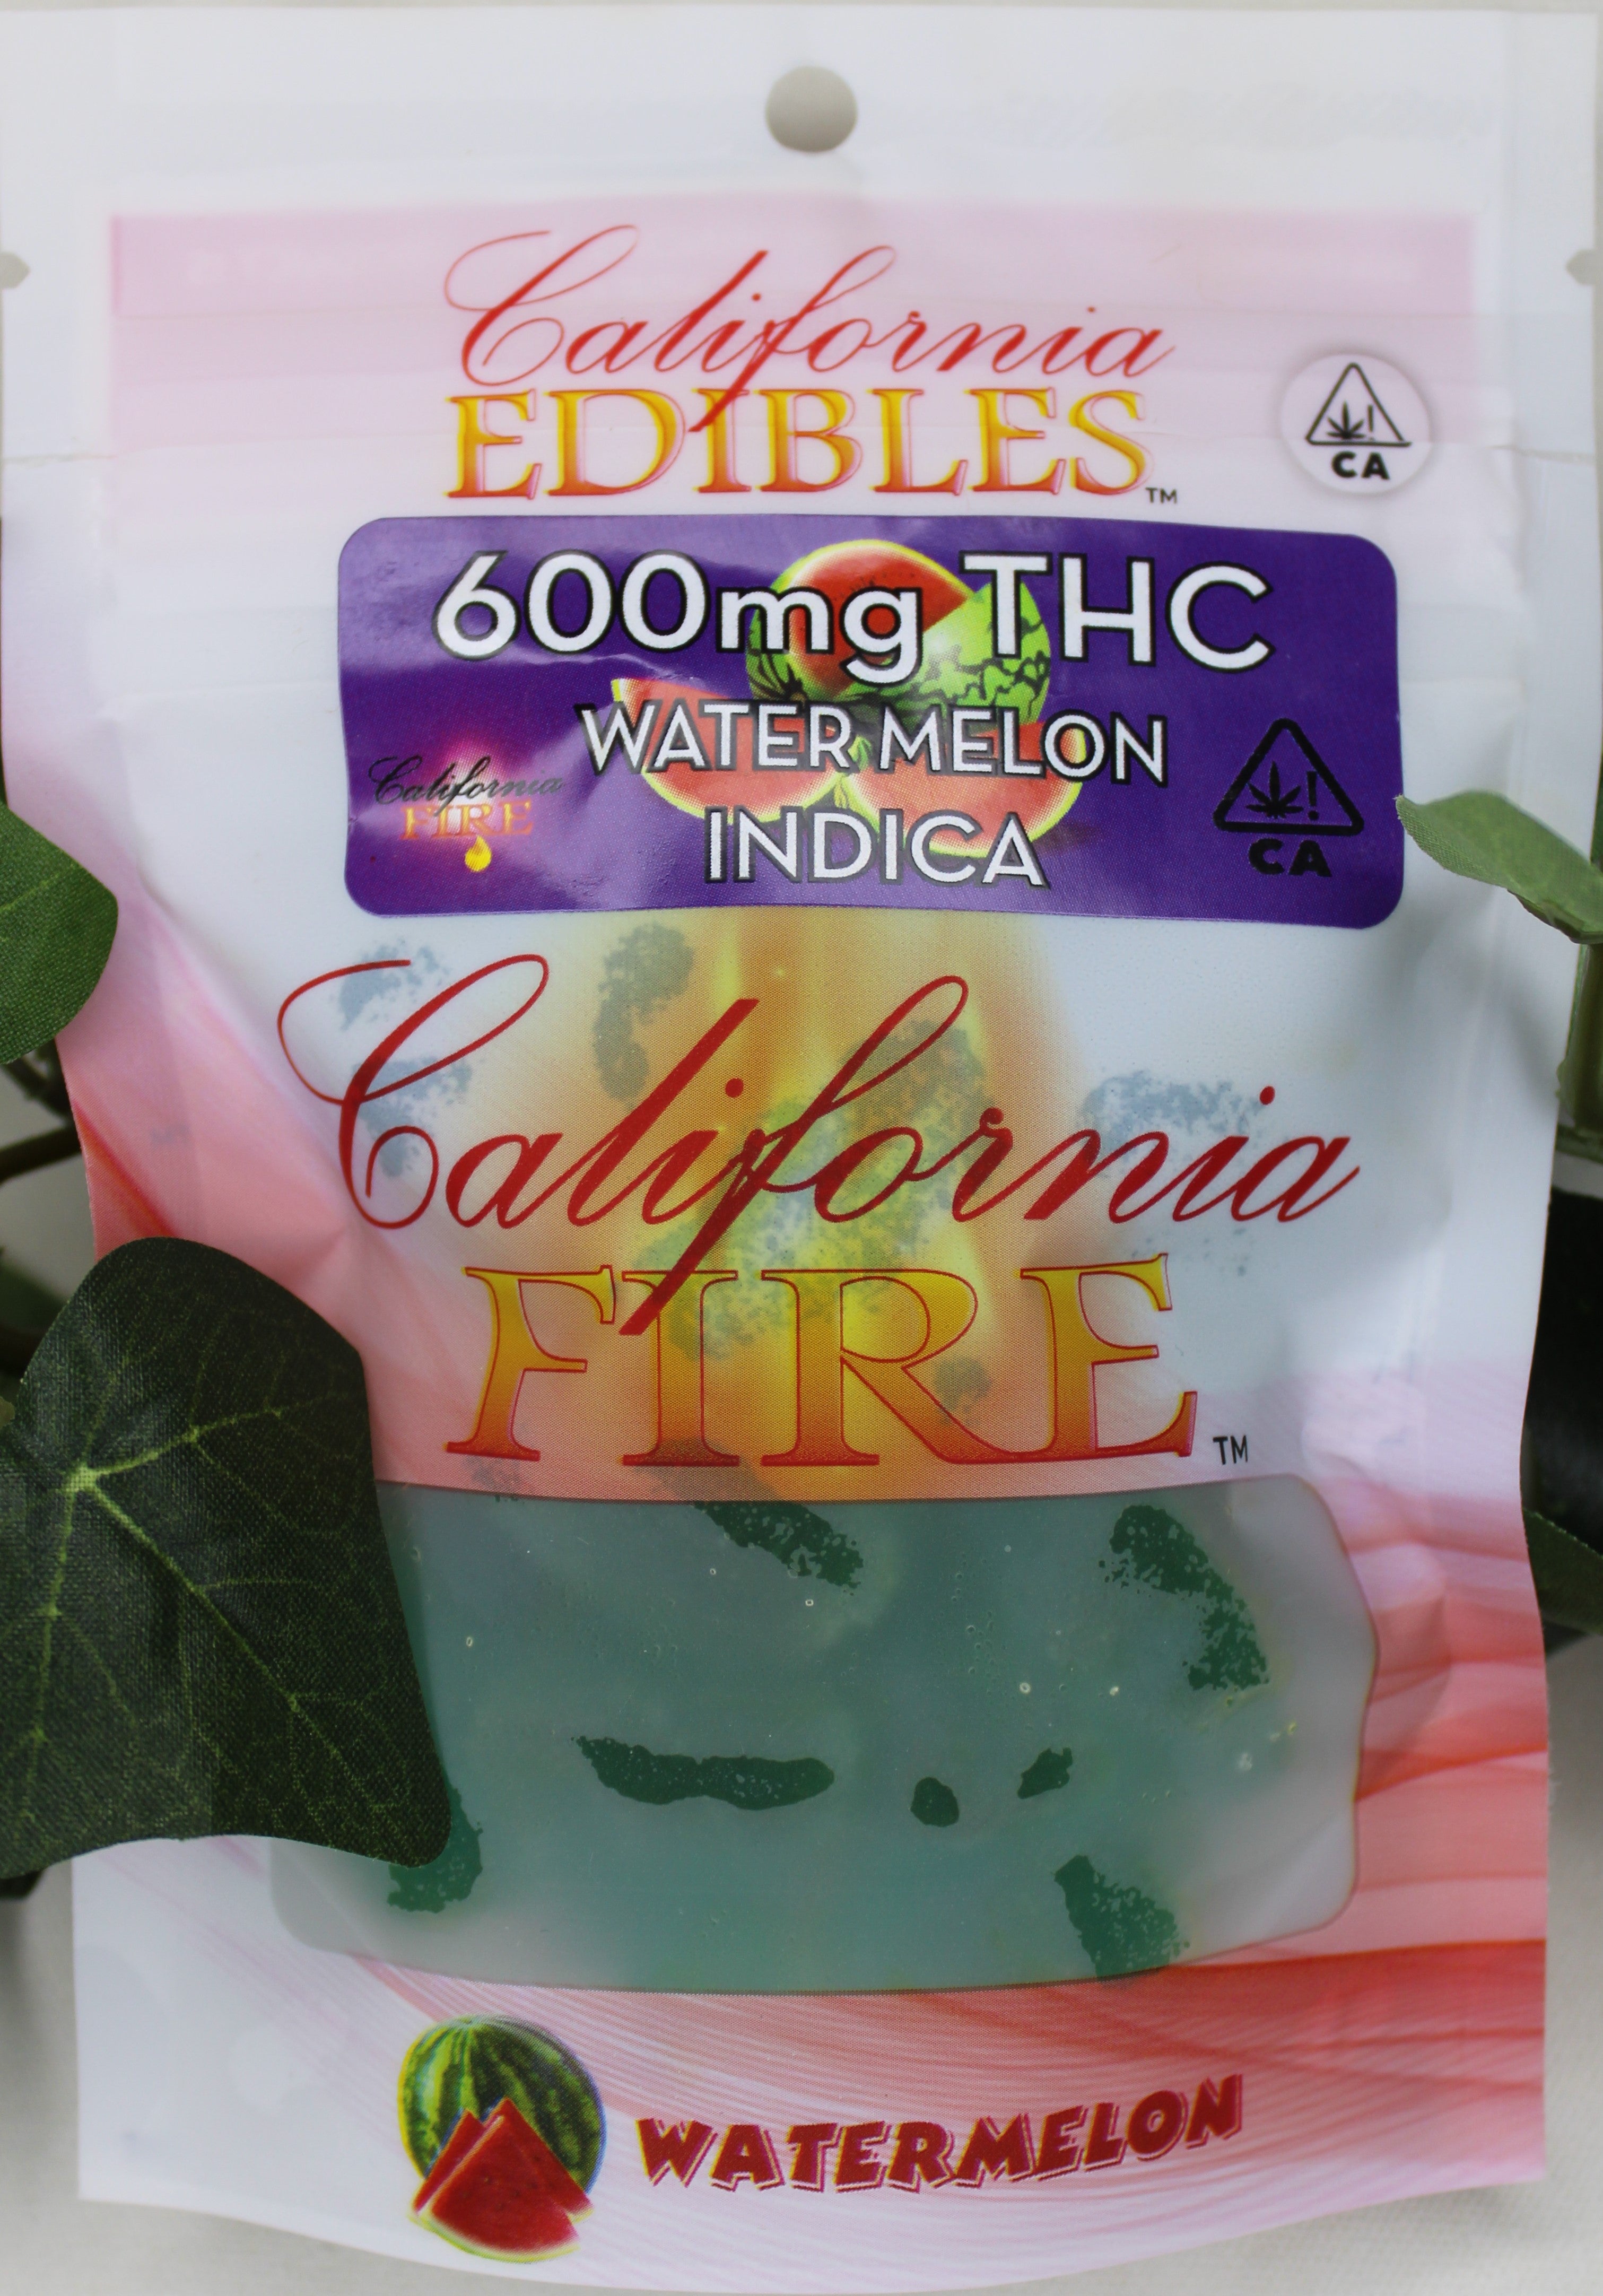 California Fire 600mg "Watermelon" THC Edible